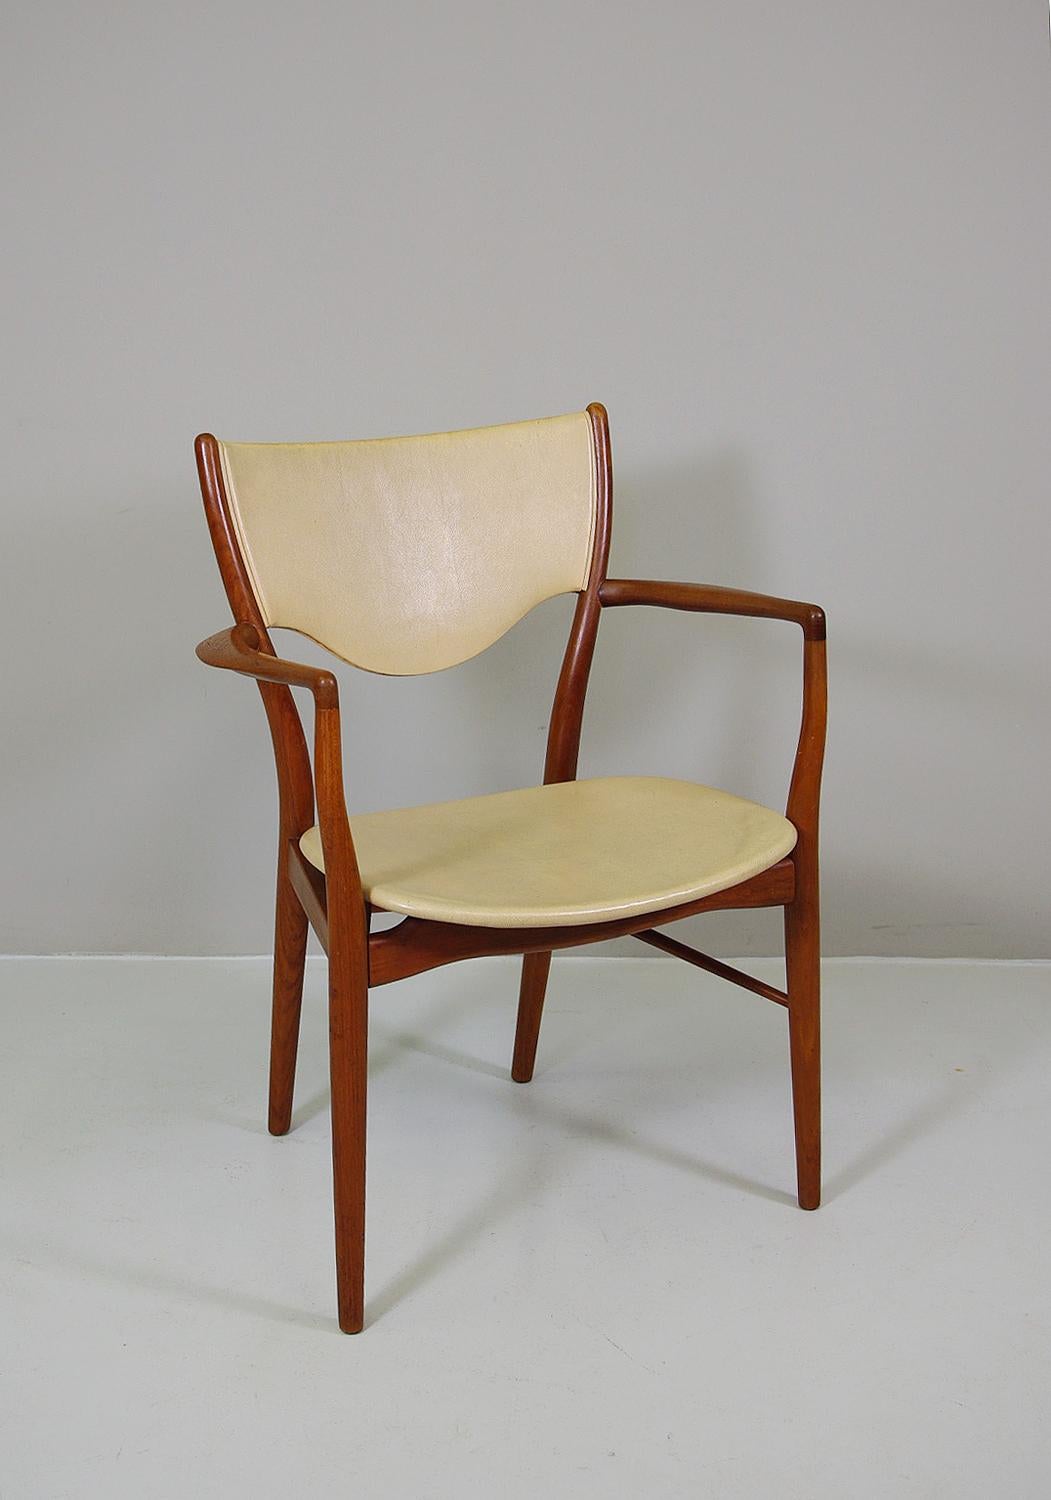 Dieser ikonische Sessel besteht aus massivem Mahagoniholz und einem äußerst eleganten und seltenen Ziegenleder-Pergamentbezug. Hergestellt im Jahr 1946 von Bovirke Denmark.
Der BO46 ist ein Beispiel für Finn Juhls schönstes Werk. Er wurde